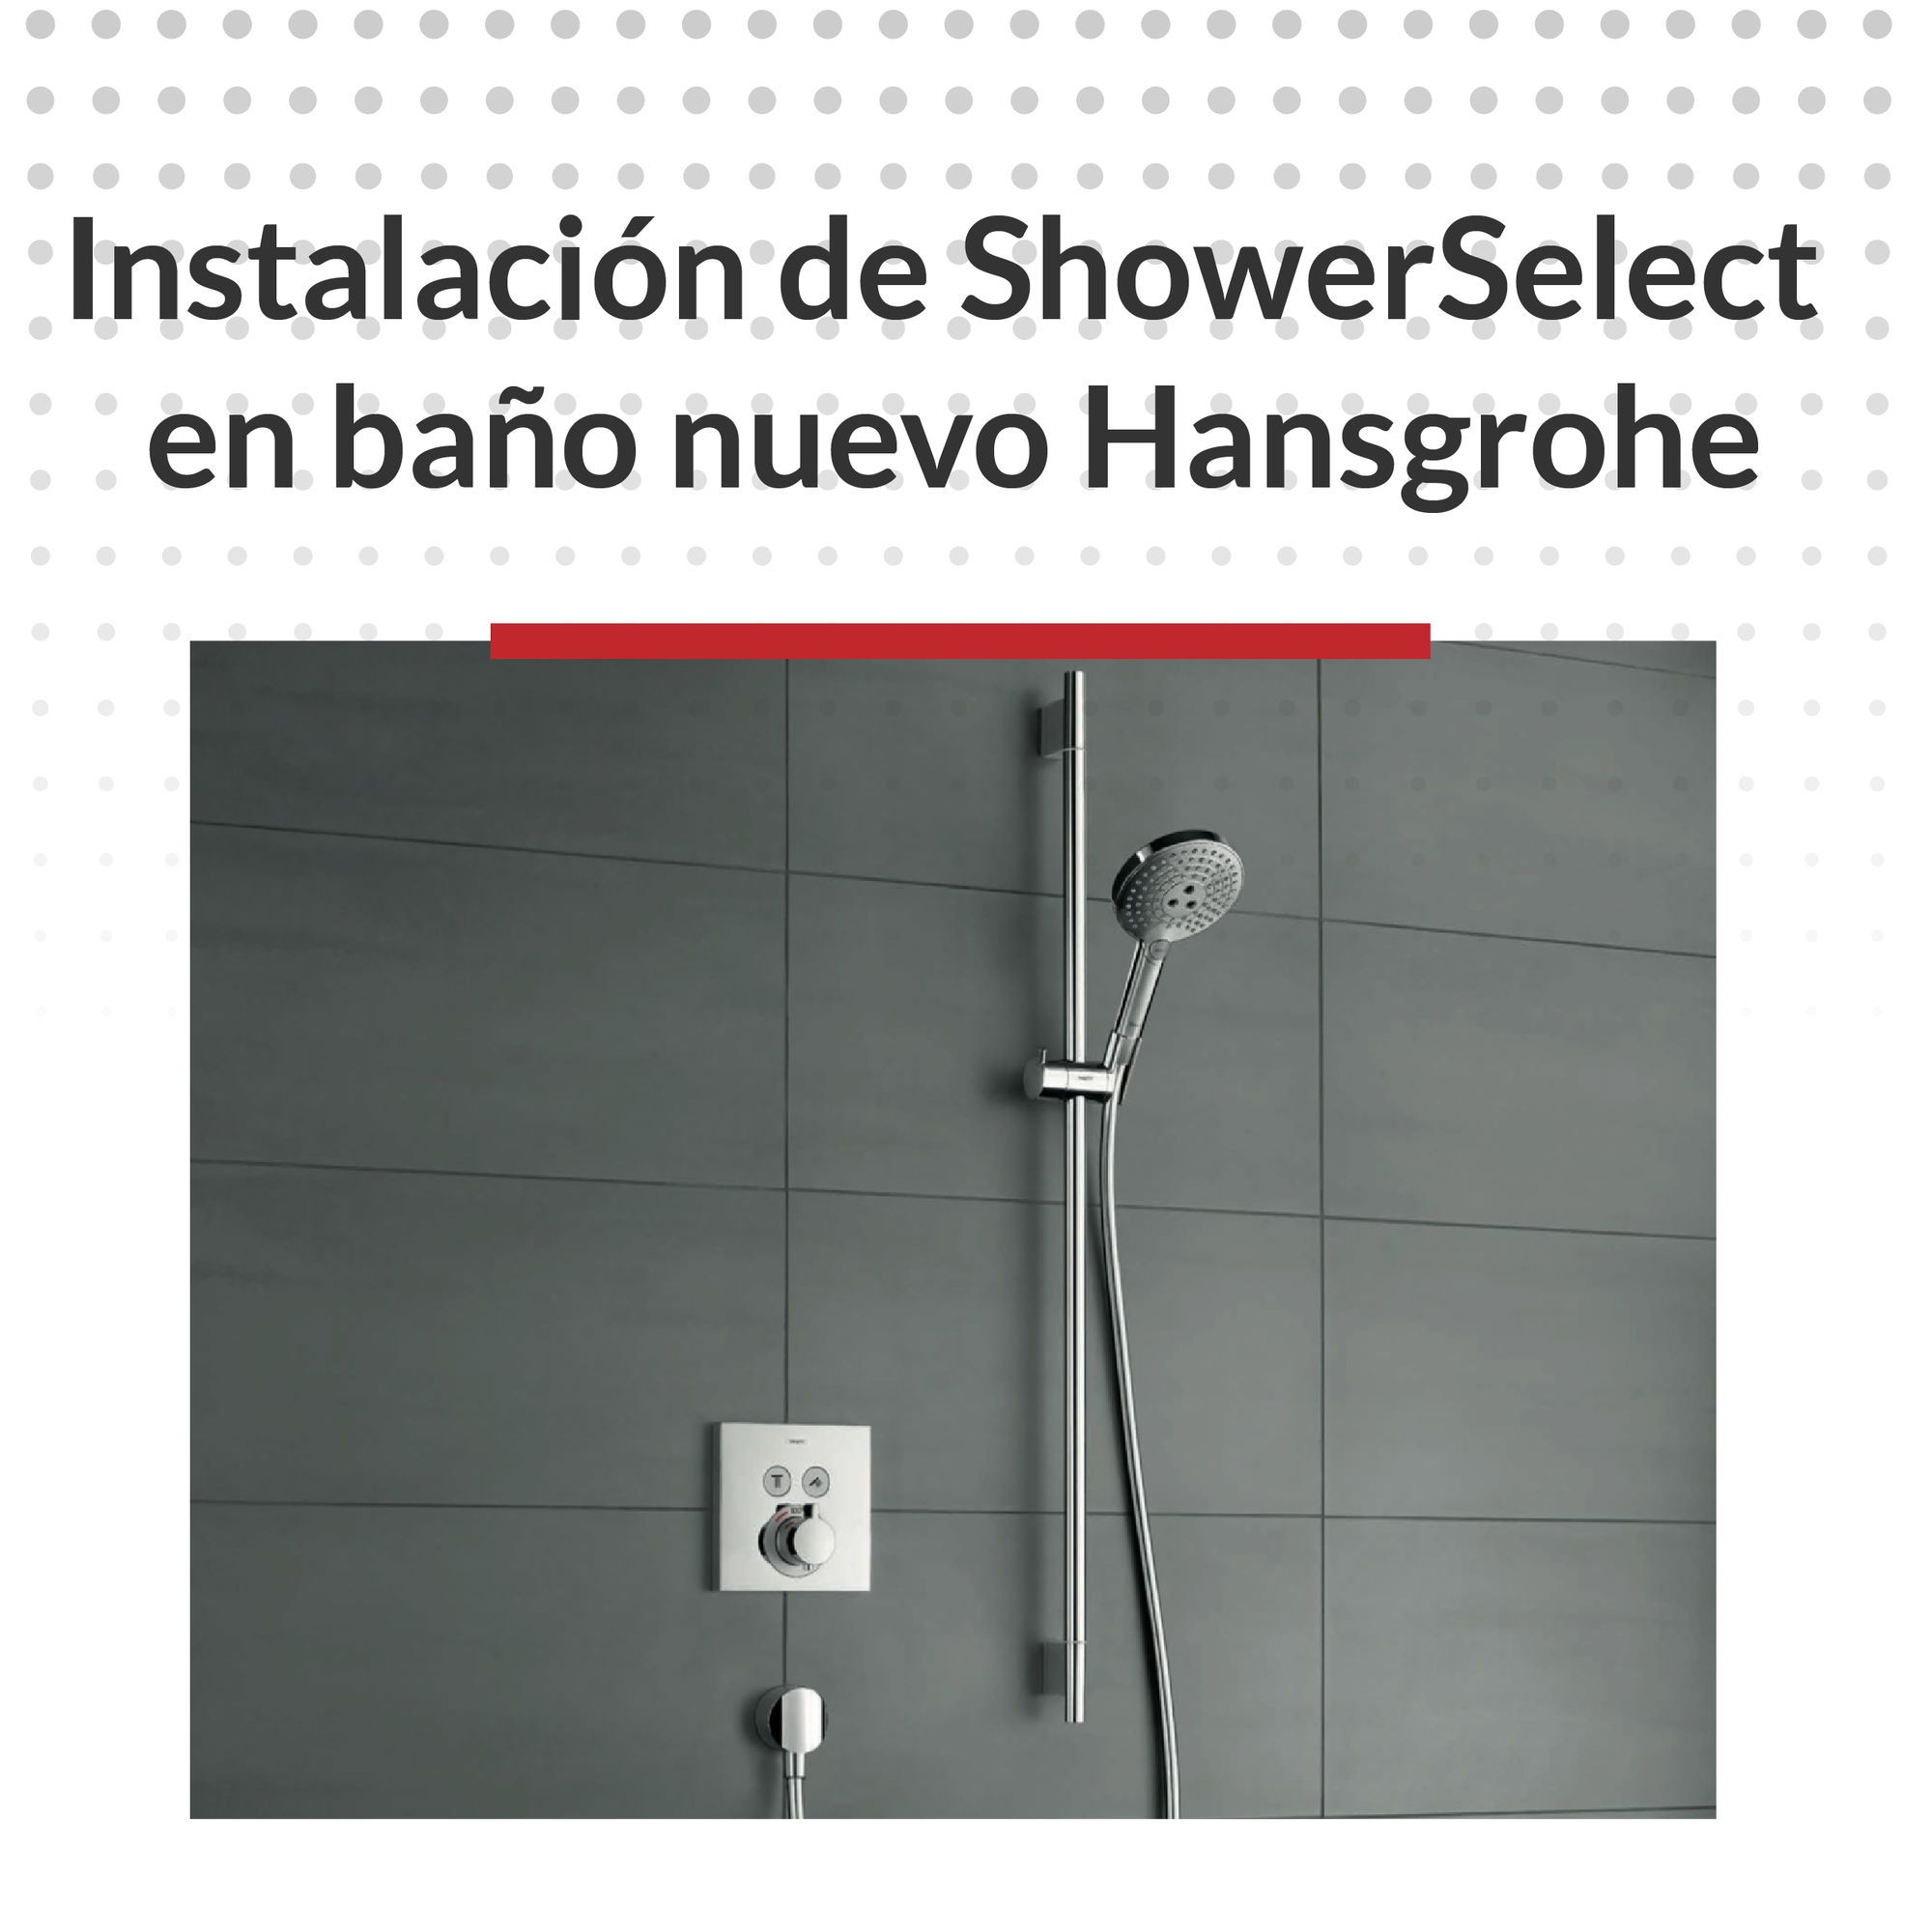 Instalación de ShowerSelect en baño nuevo Hansgrohe